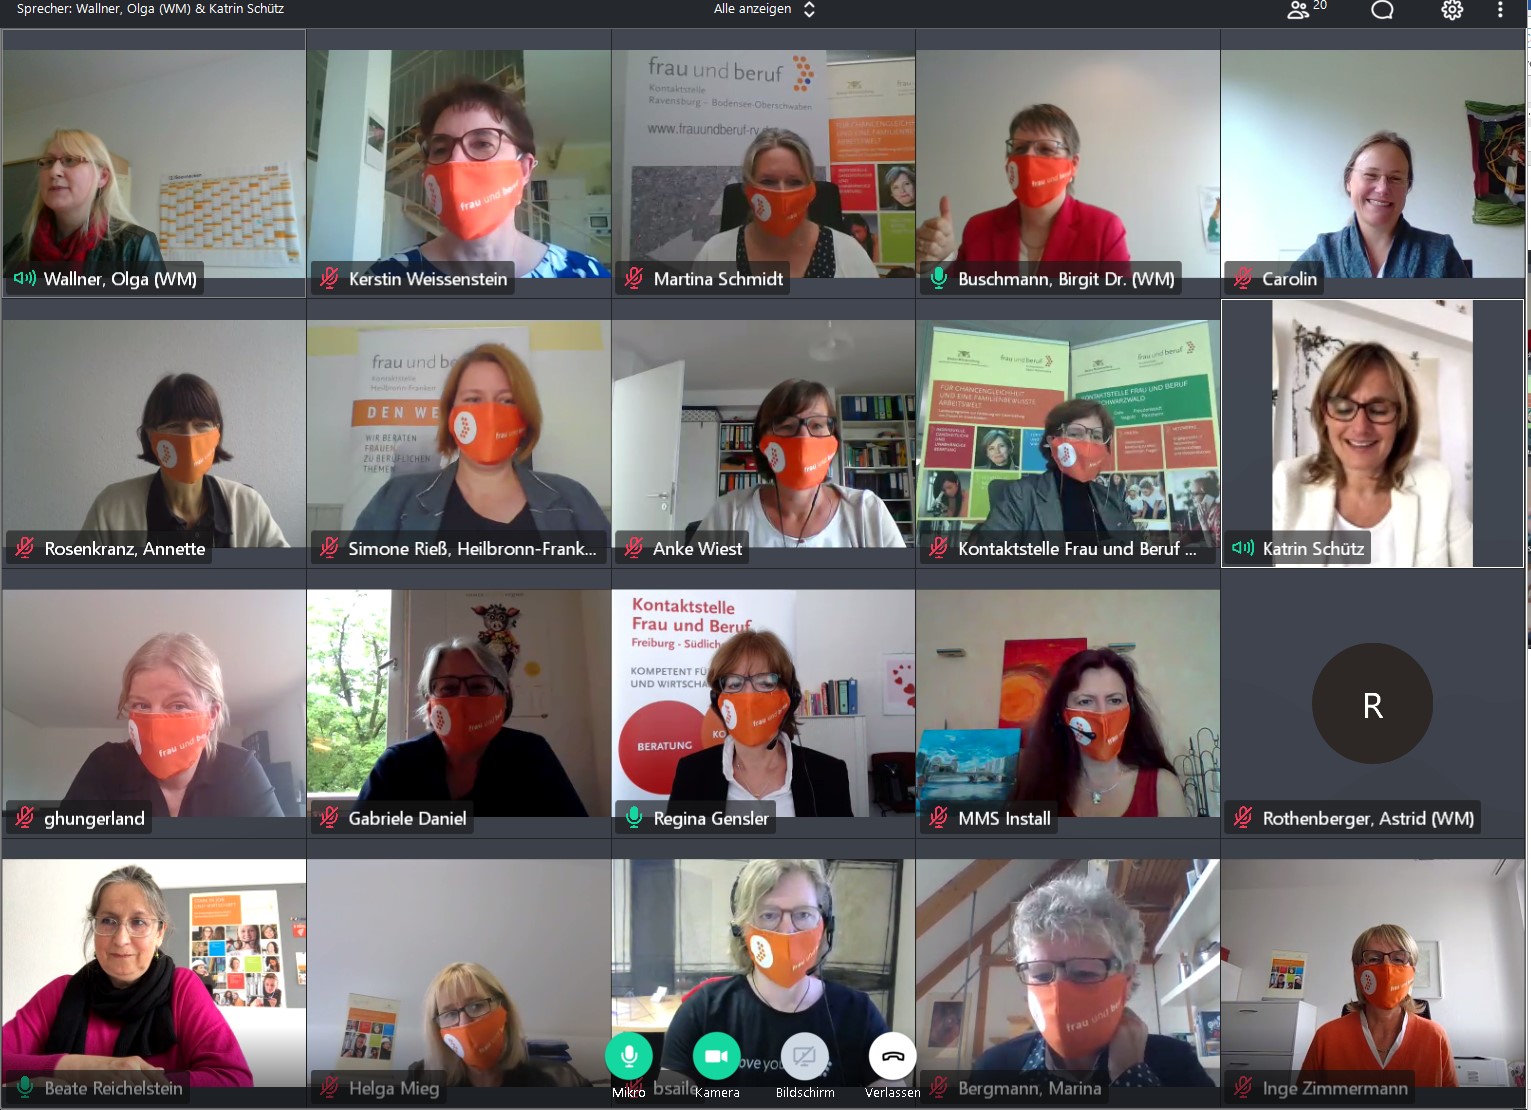 Insgesamt 19 Frauen sind in einem Live-Chat mit Staatssekretärin Schütz. Fast alle tragen die orangenen Schutzmasken mit dem Logo der Kontaktstelle Frau und Beruf.